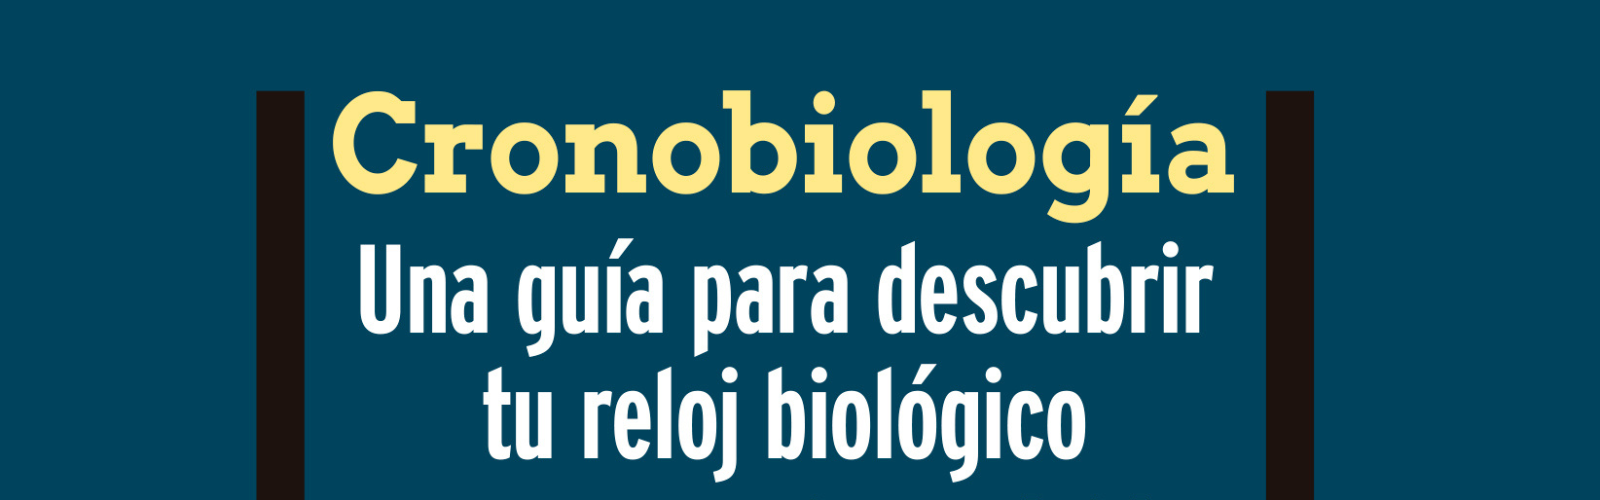 El catedrático de la UMU Juan Antonio Madrid publica el libro ‘Cronobiología. Una guía para descubrir tu reloj biológico’